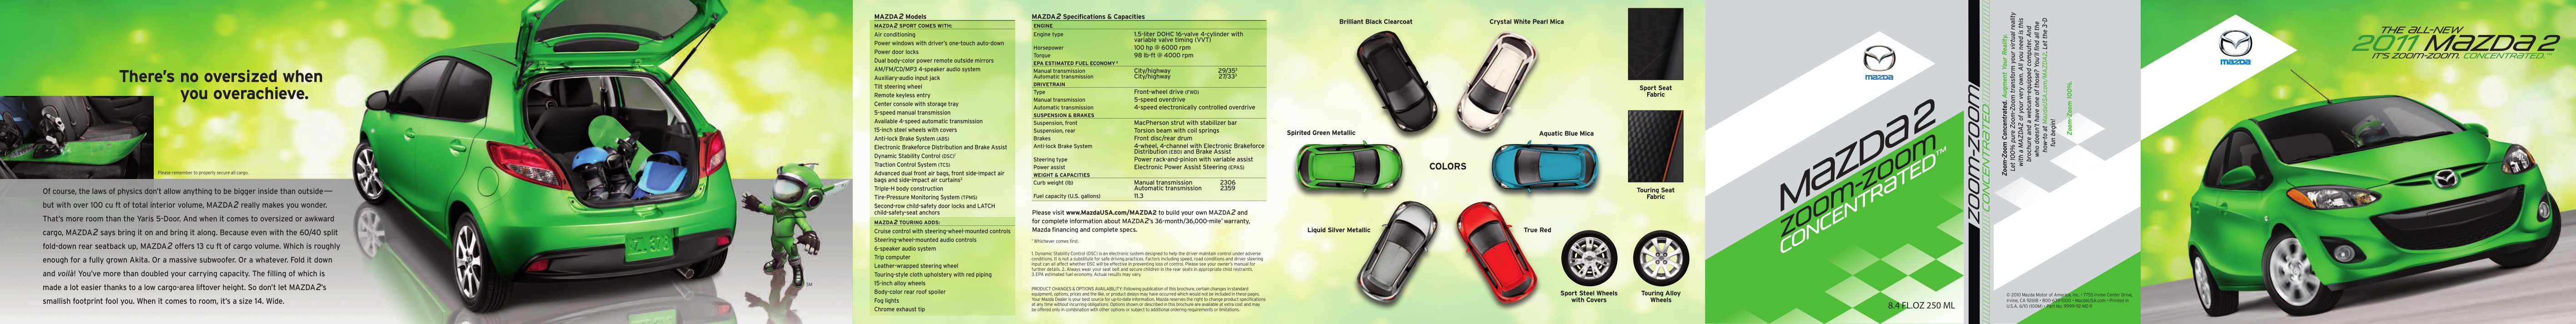 2011 Mazda 2 Brochure